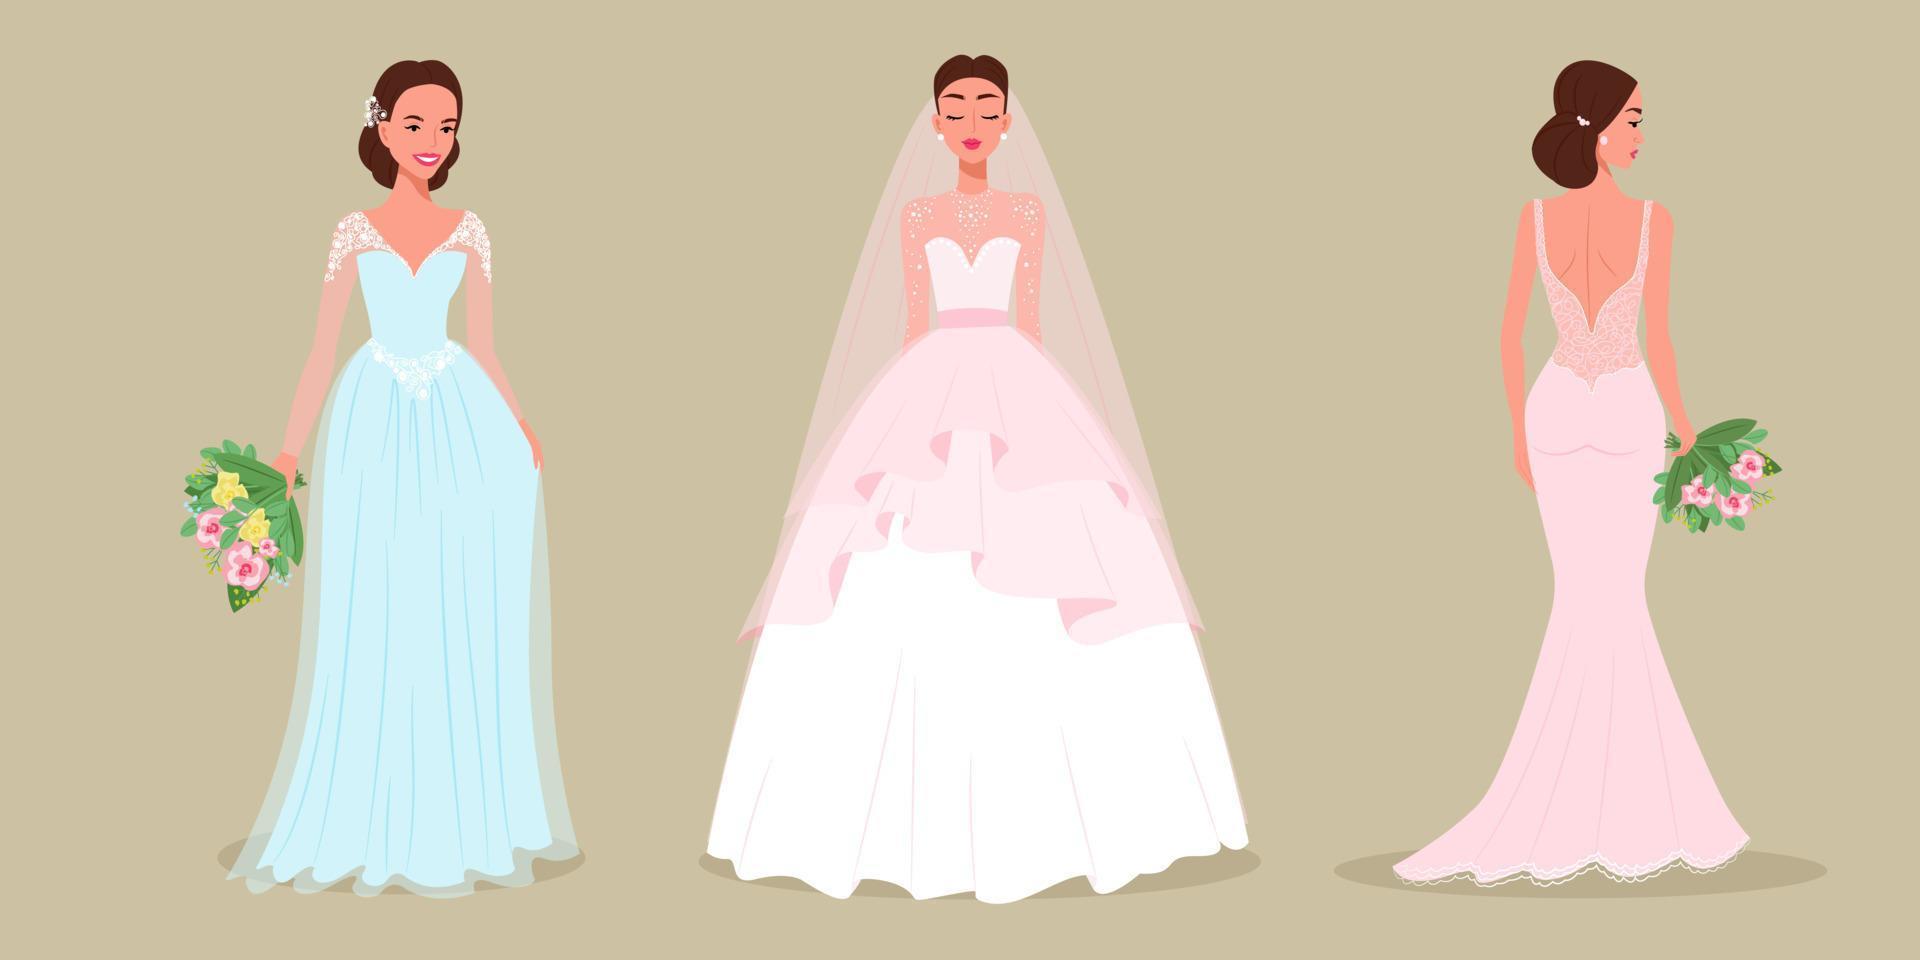 novias con exuberantes vestidos de novia, mujeres con vestidos de noche, ilustración vectorial vector